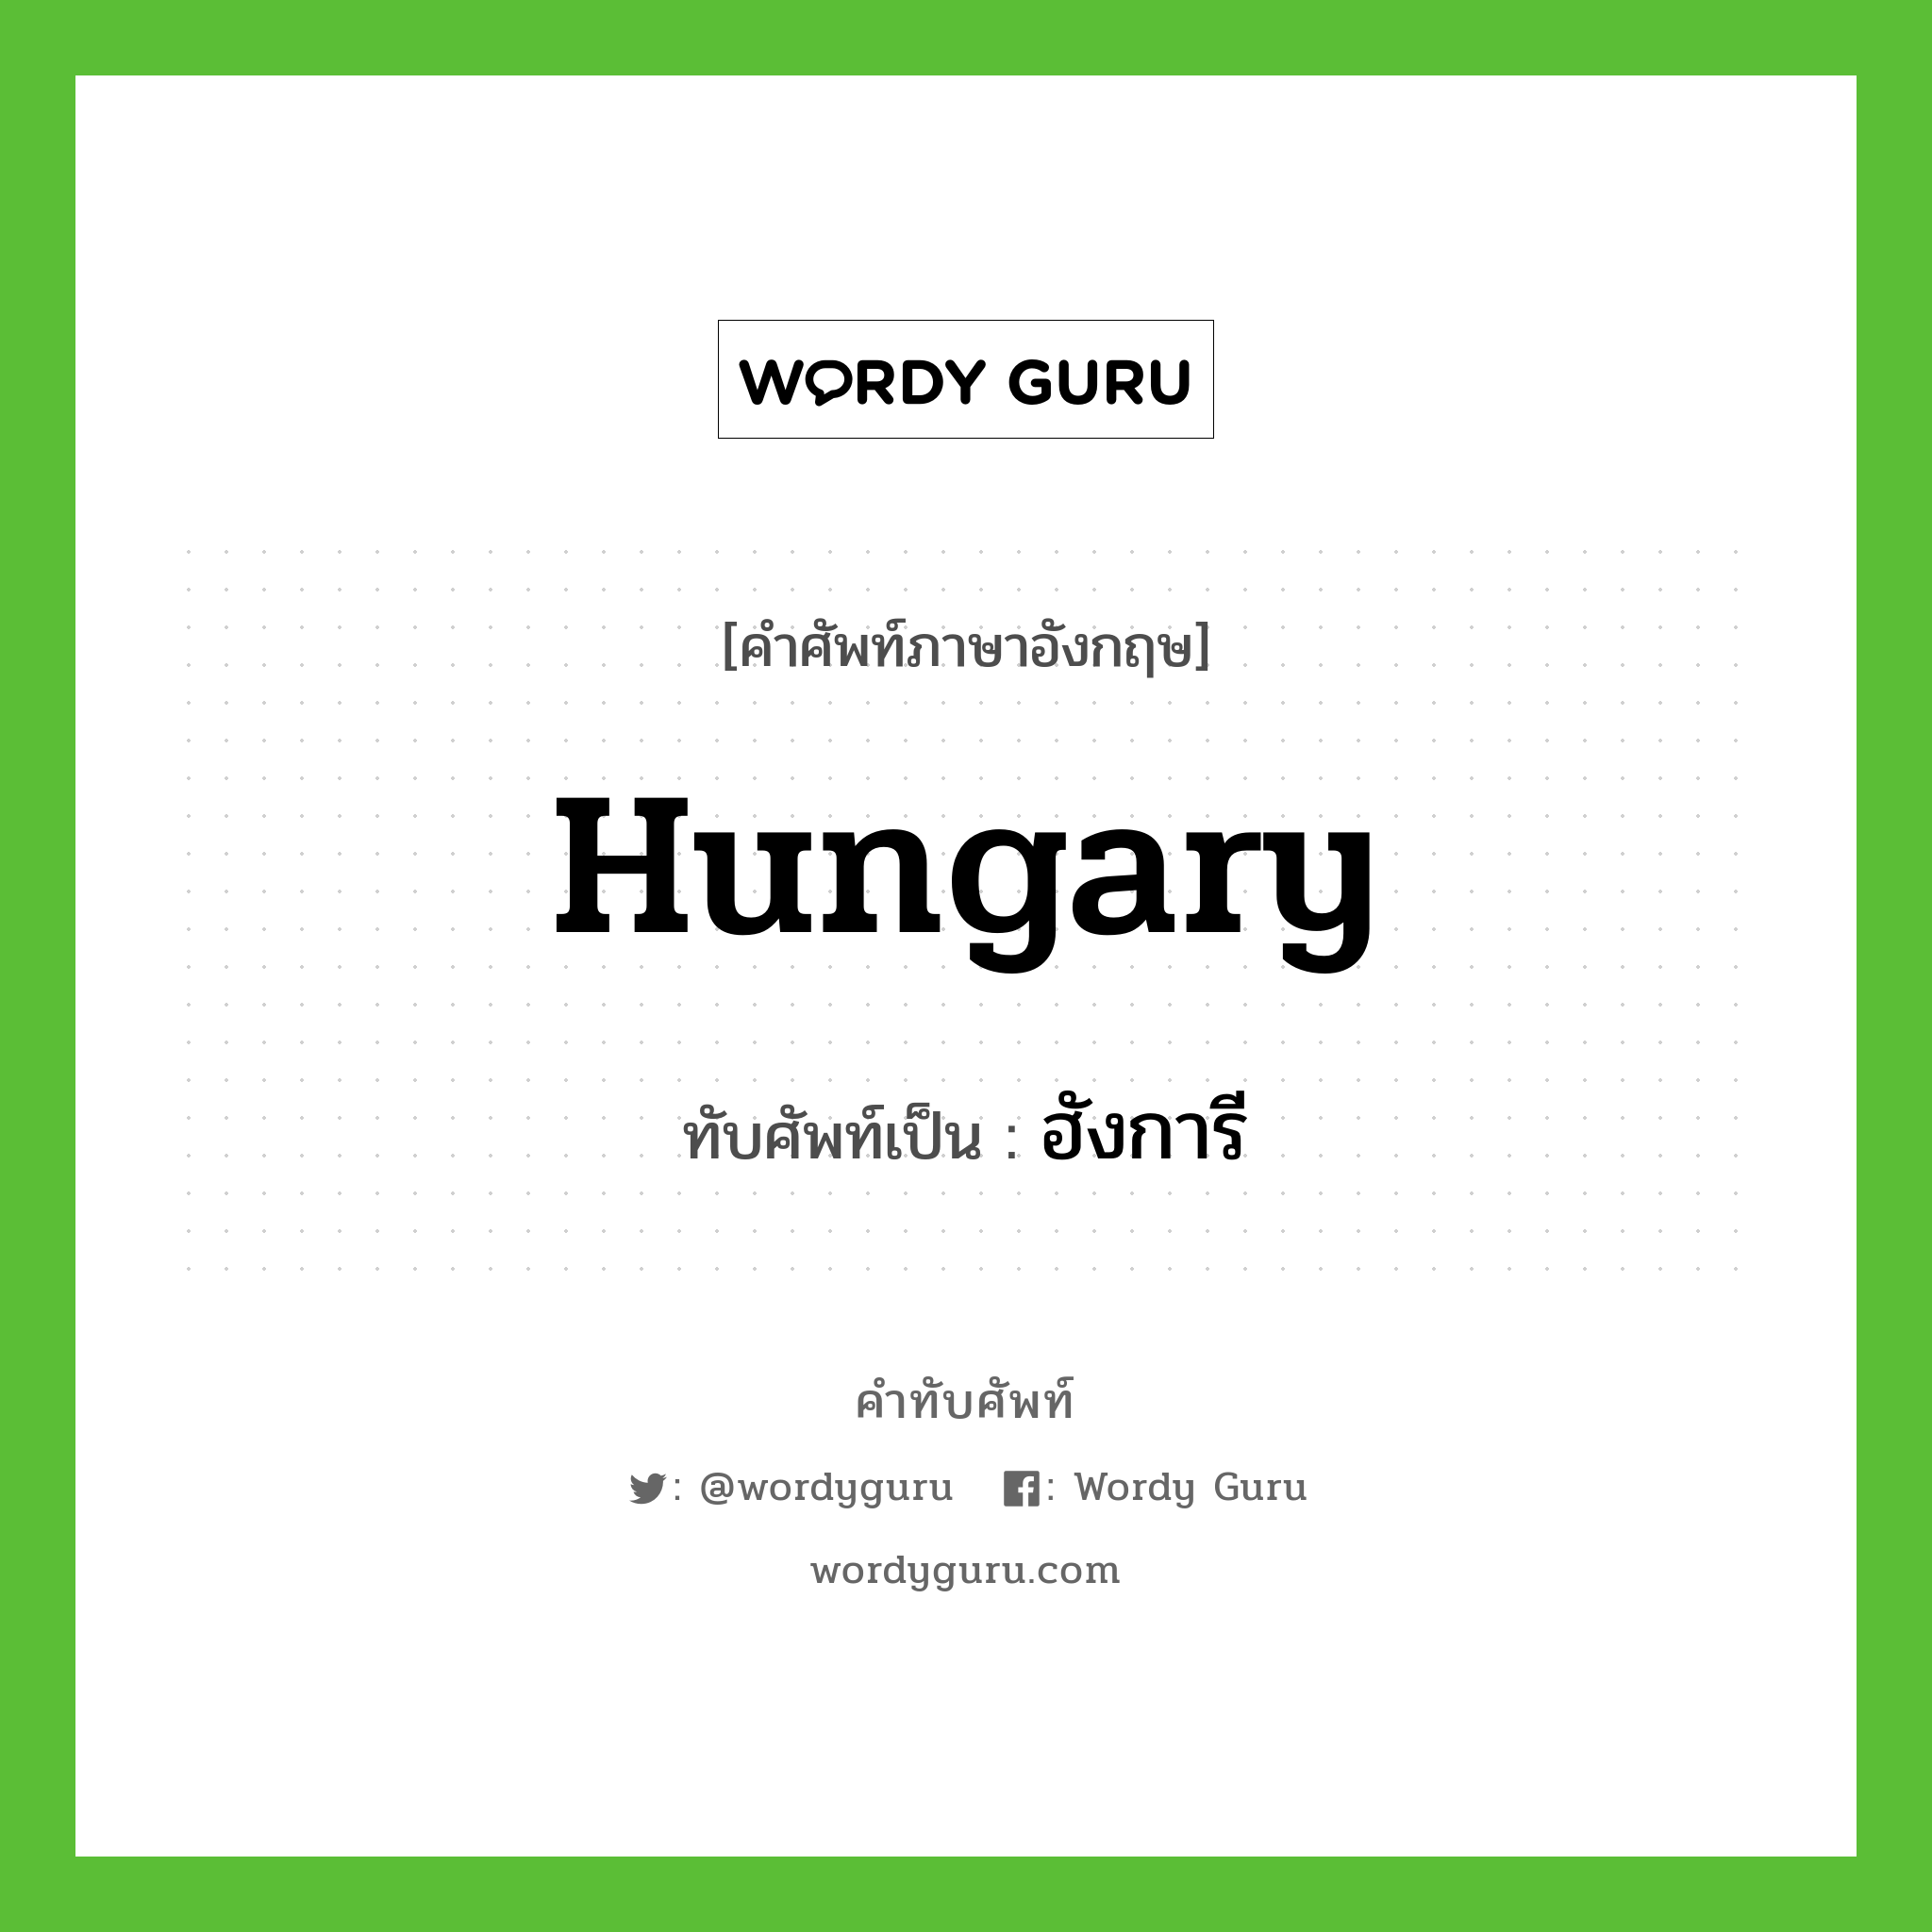 ฮังการี เขียนอย่างไร?, คำศัพท์ภาษาอังกฤษ ฮังการี ทับศัพท์เป็น Hungary